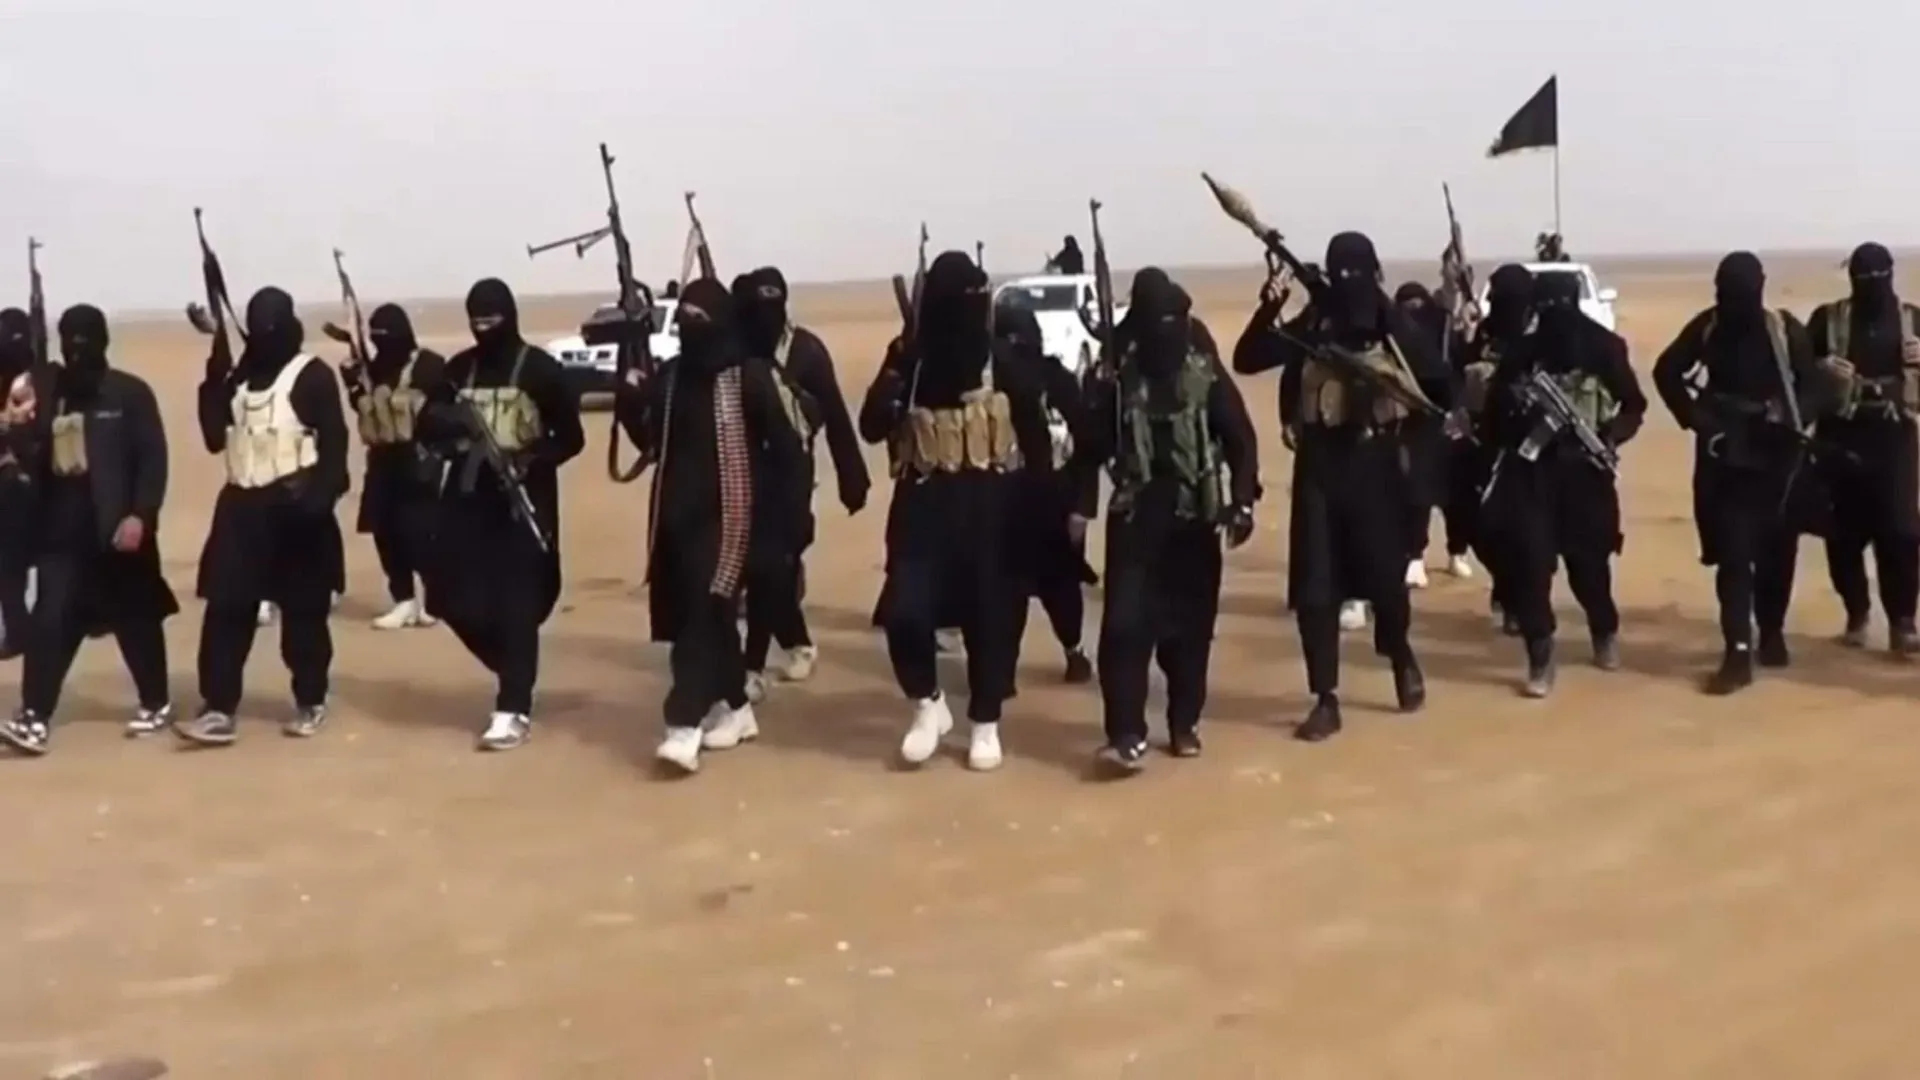 خبراء في الأمم المتحدة يحذرون من تنامي قوة "داعـ ـش" مجدداً في سوريا والعراق